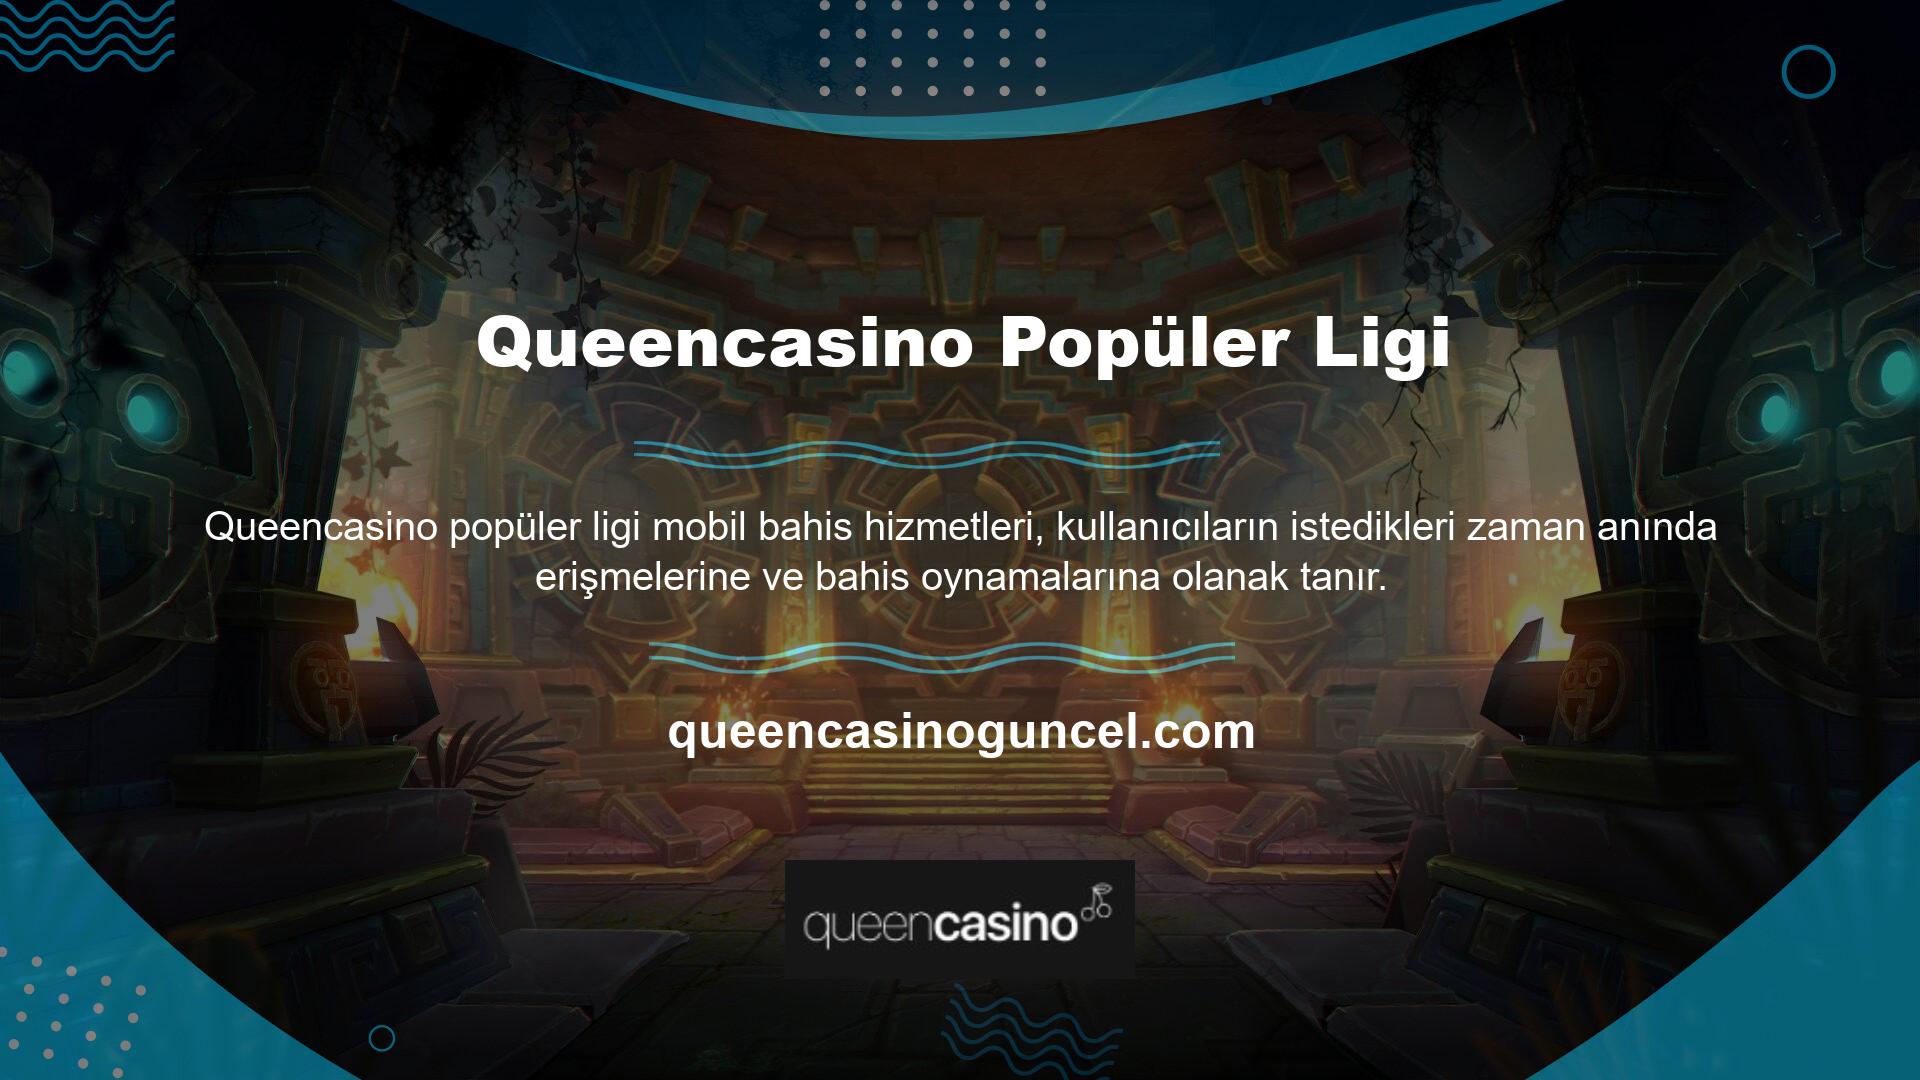 Queencasino popüler lig bahis sitesi, mobil cihazlarda tüm önemli bahis ve oyun hizmetlerini sunmaktadır